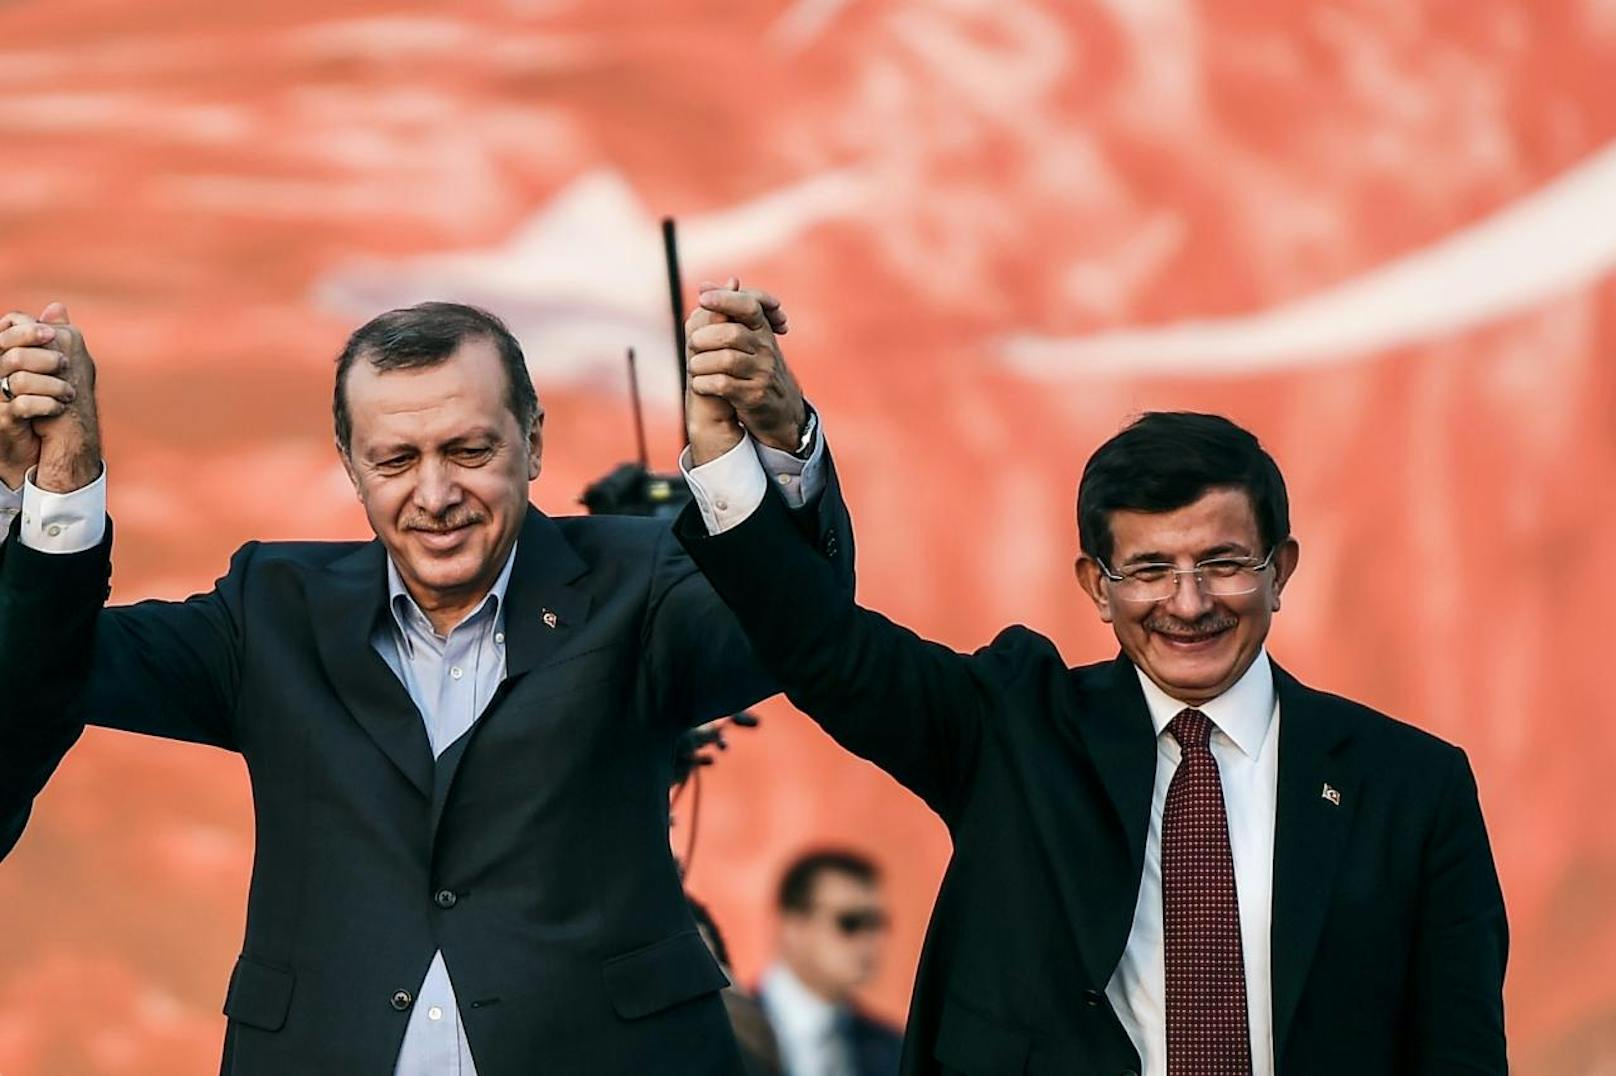 Erdogan holte den damaligen Politikprofessor Davutoglu 2002 als außenpolitischen Berater in sein Team. In der AKP legte Davutoglu als Erdogan-Vertrauter eine steile Karriere hin, wurde Außenminister und zuletzt Premier.